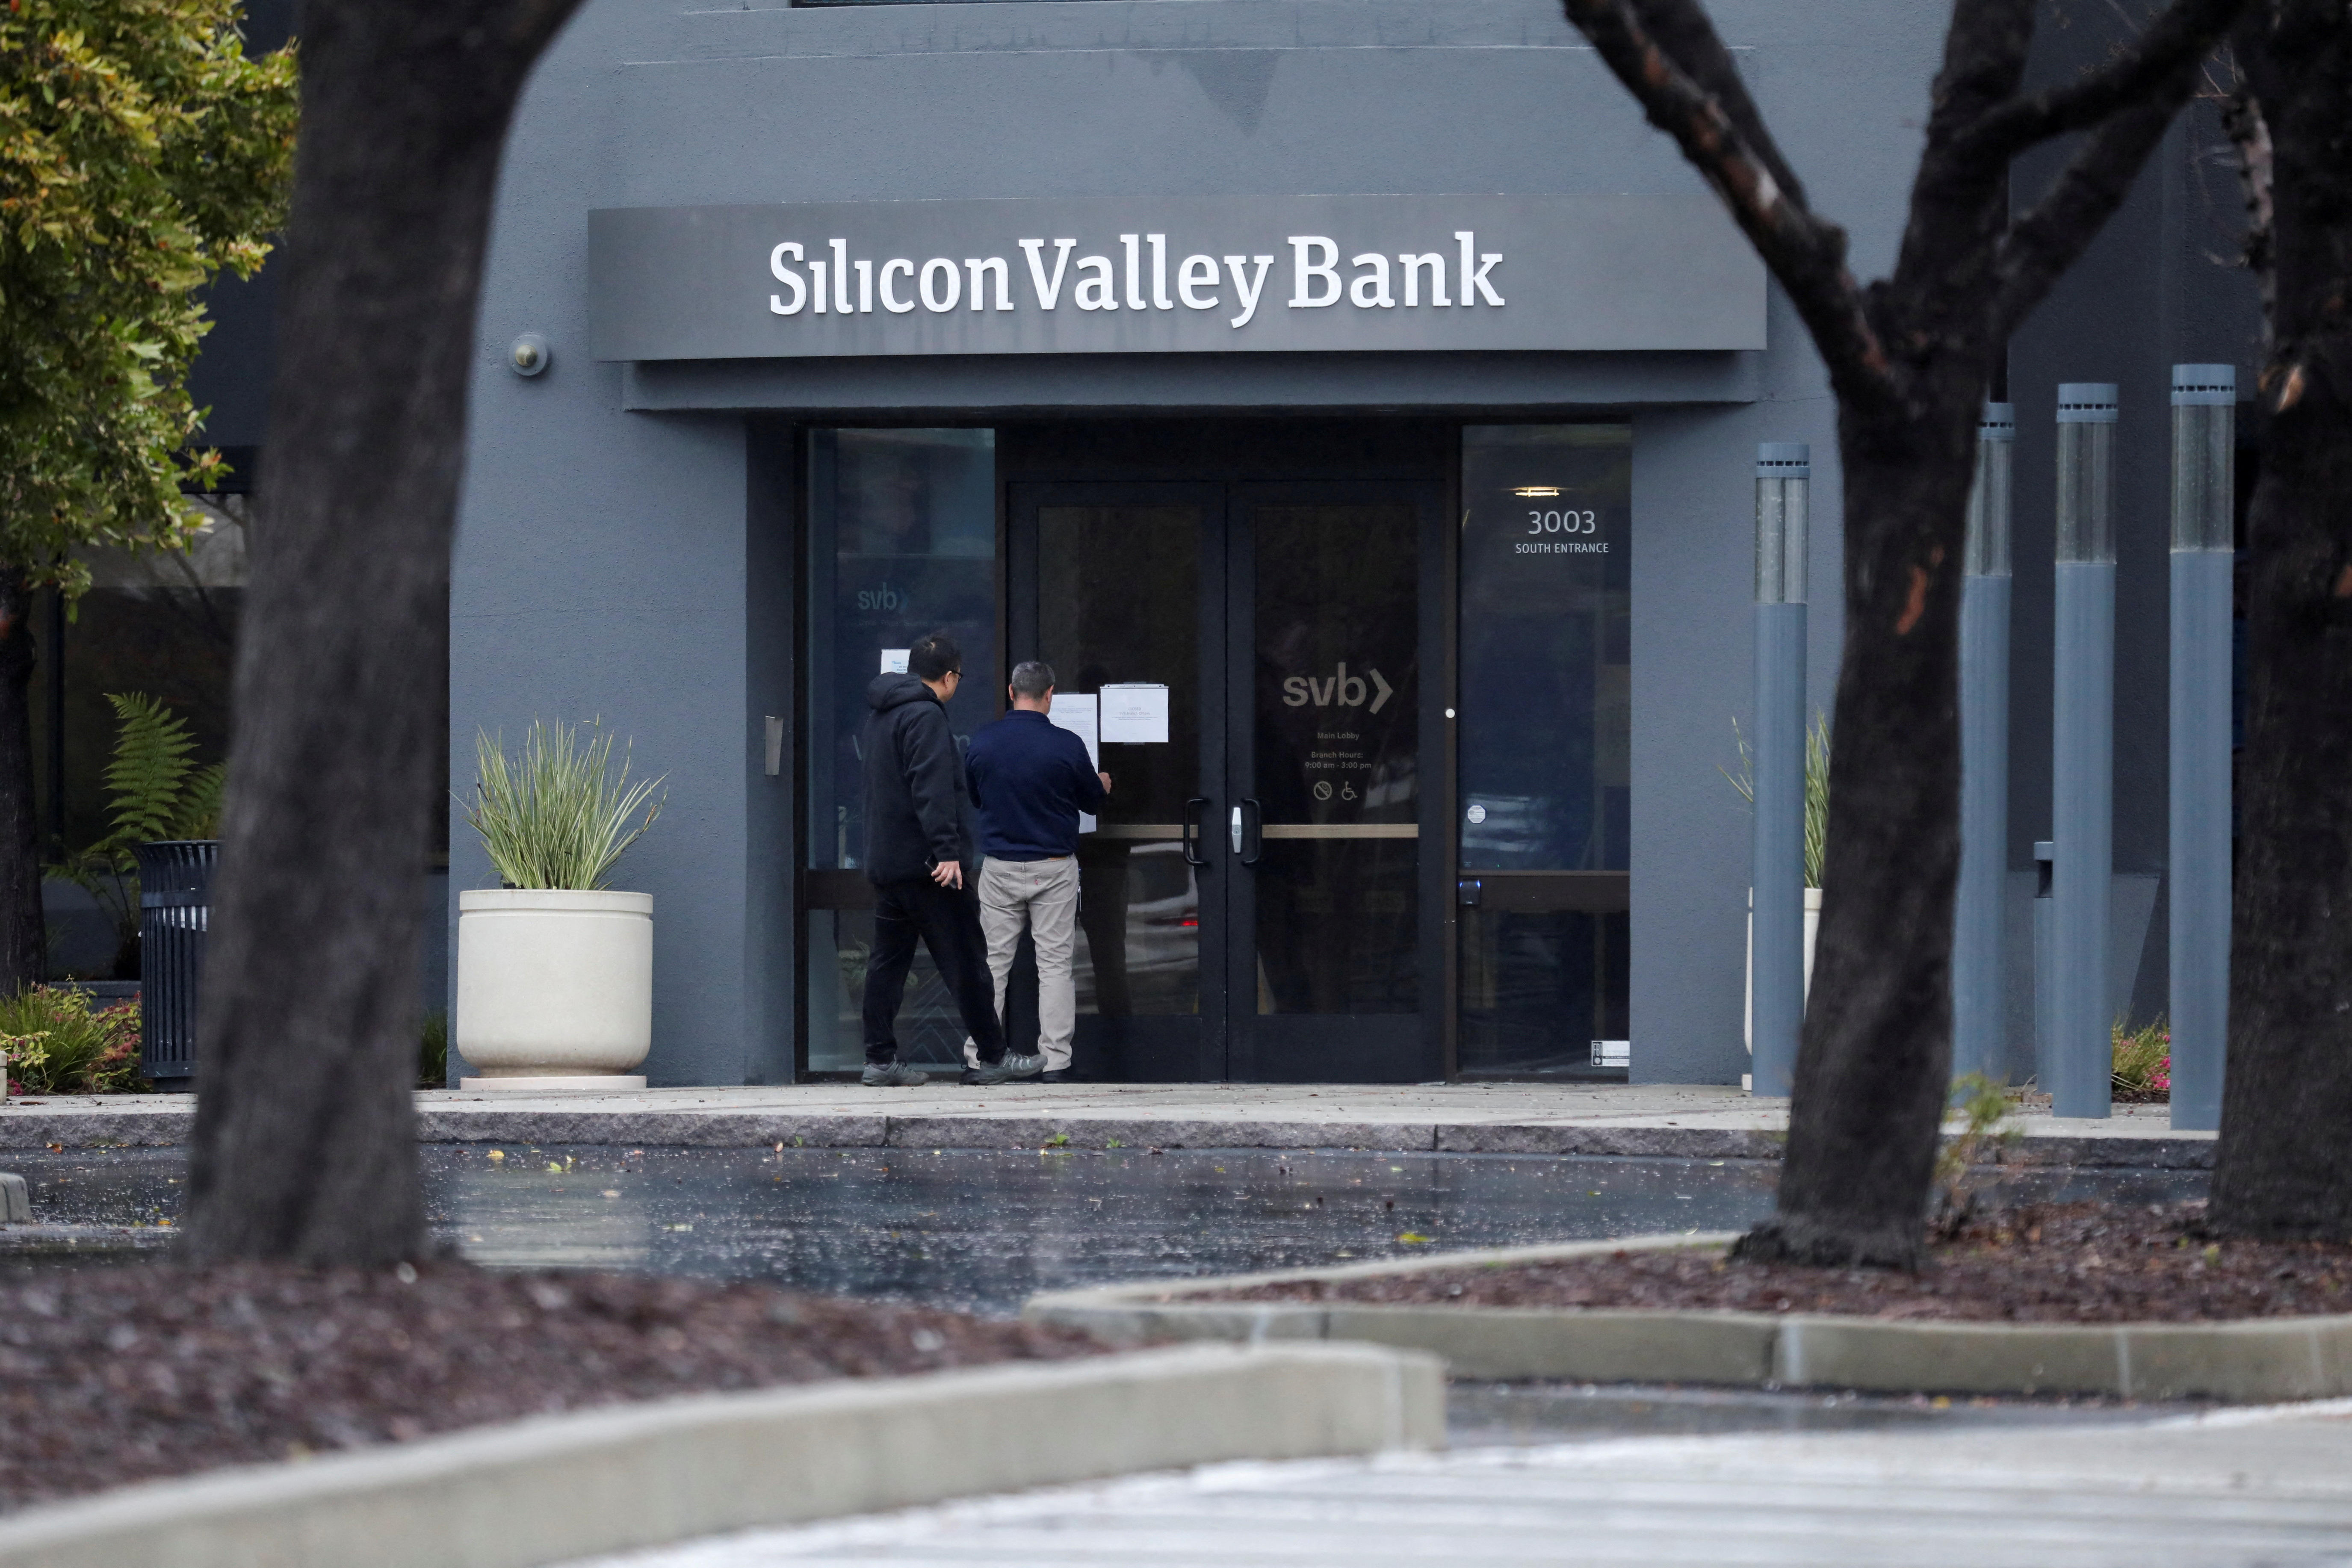 Oficina de Silicon Valley Bank